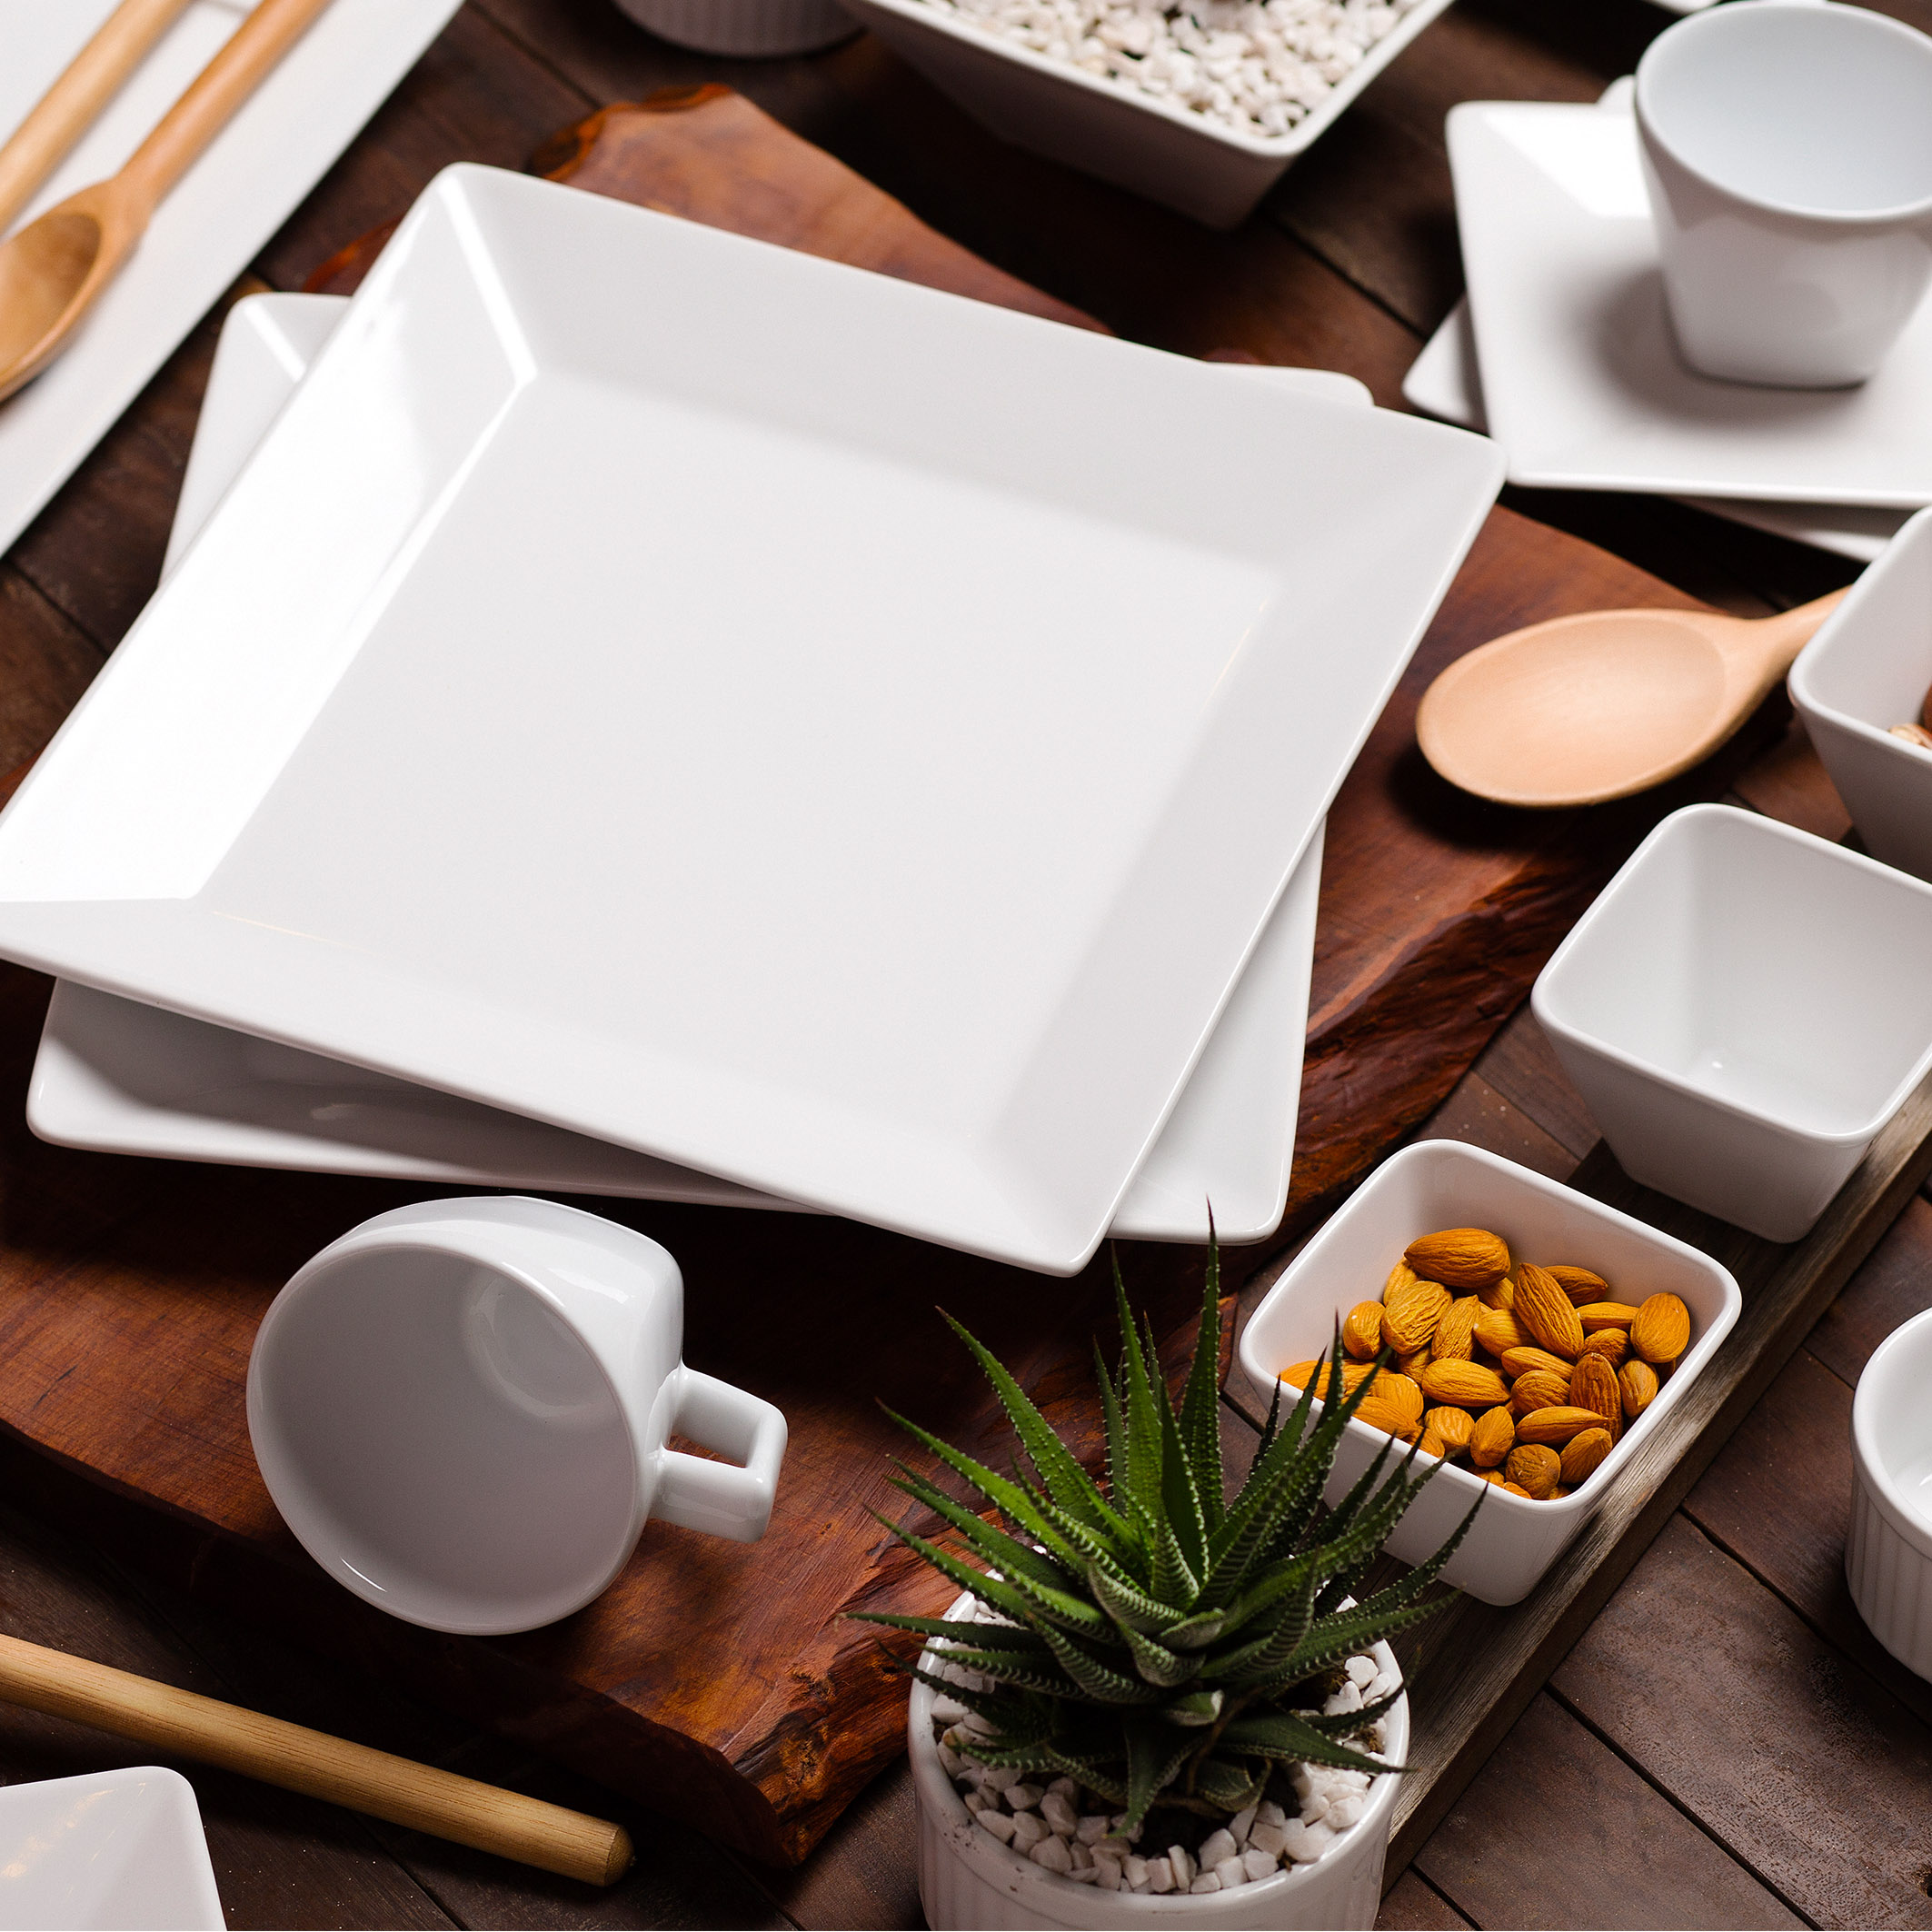 VEWEET juego de vajilla de porcelana de 30 piezas, platos cuadrados blancos  con patrón con líneas, con platos playos, platos de sopa, platos de